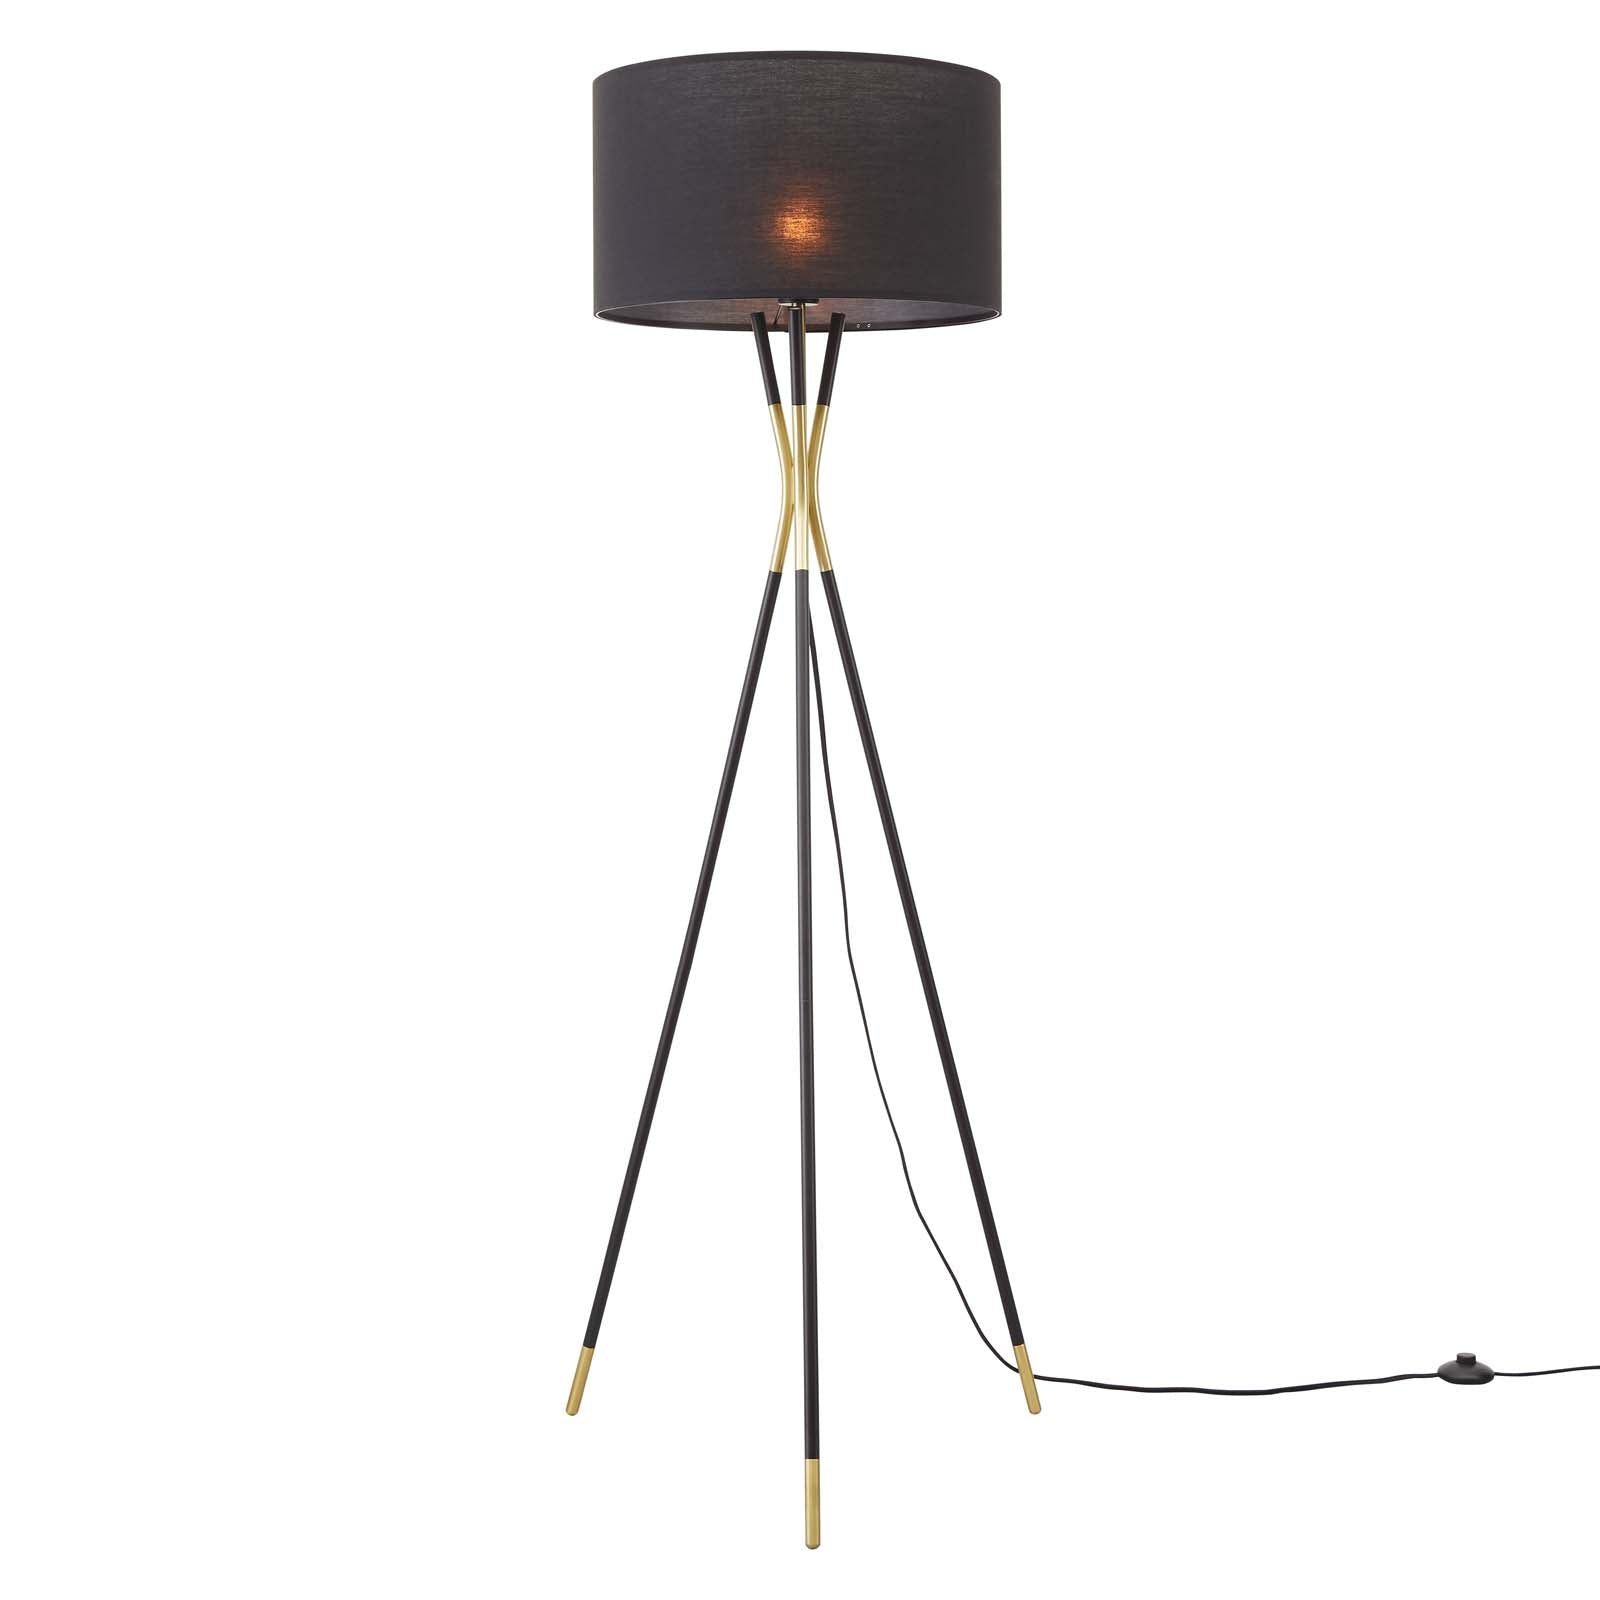 Modway Floor Lamps - Audrey Standing Floor Lamp Black Black